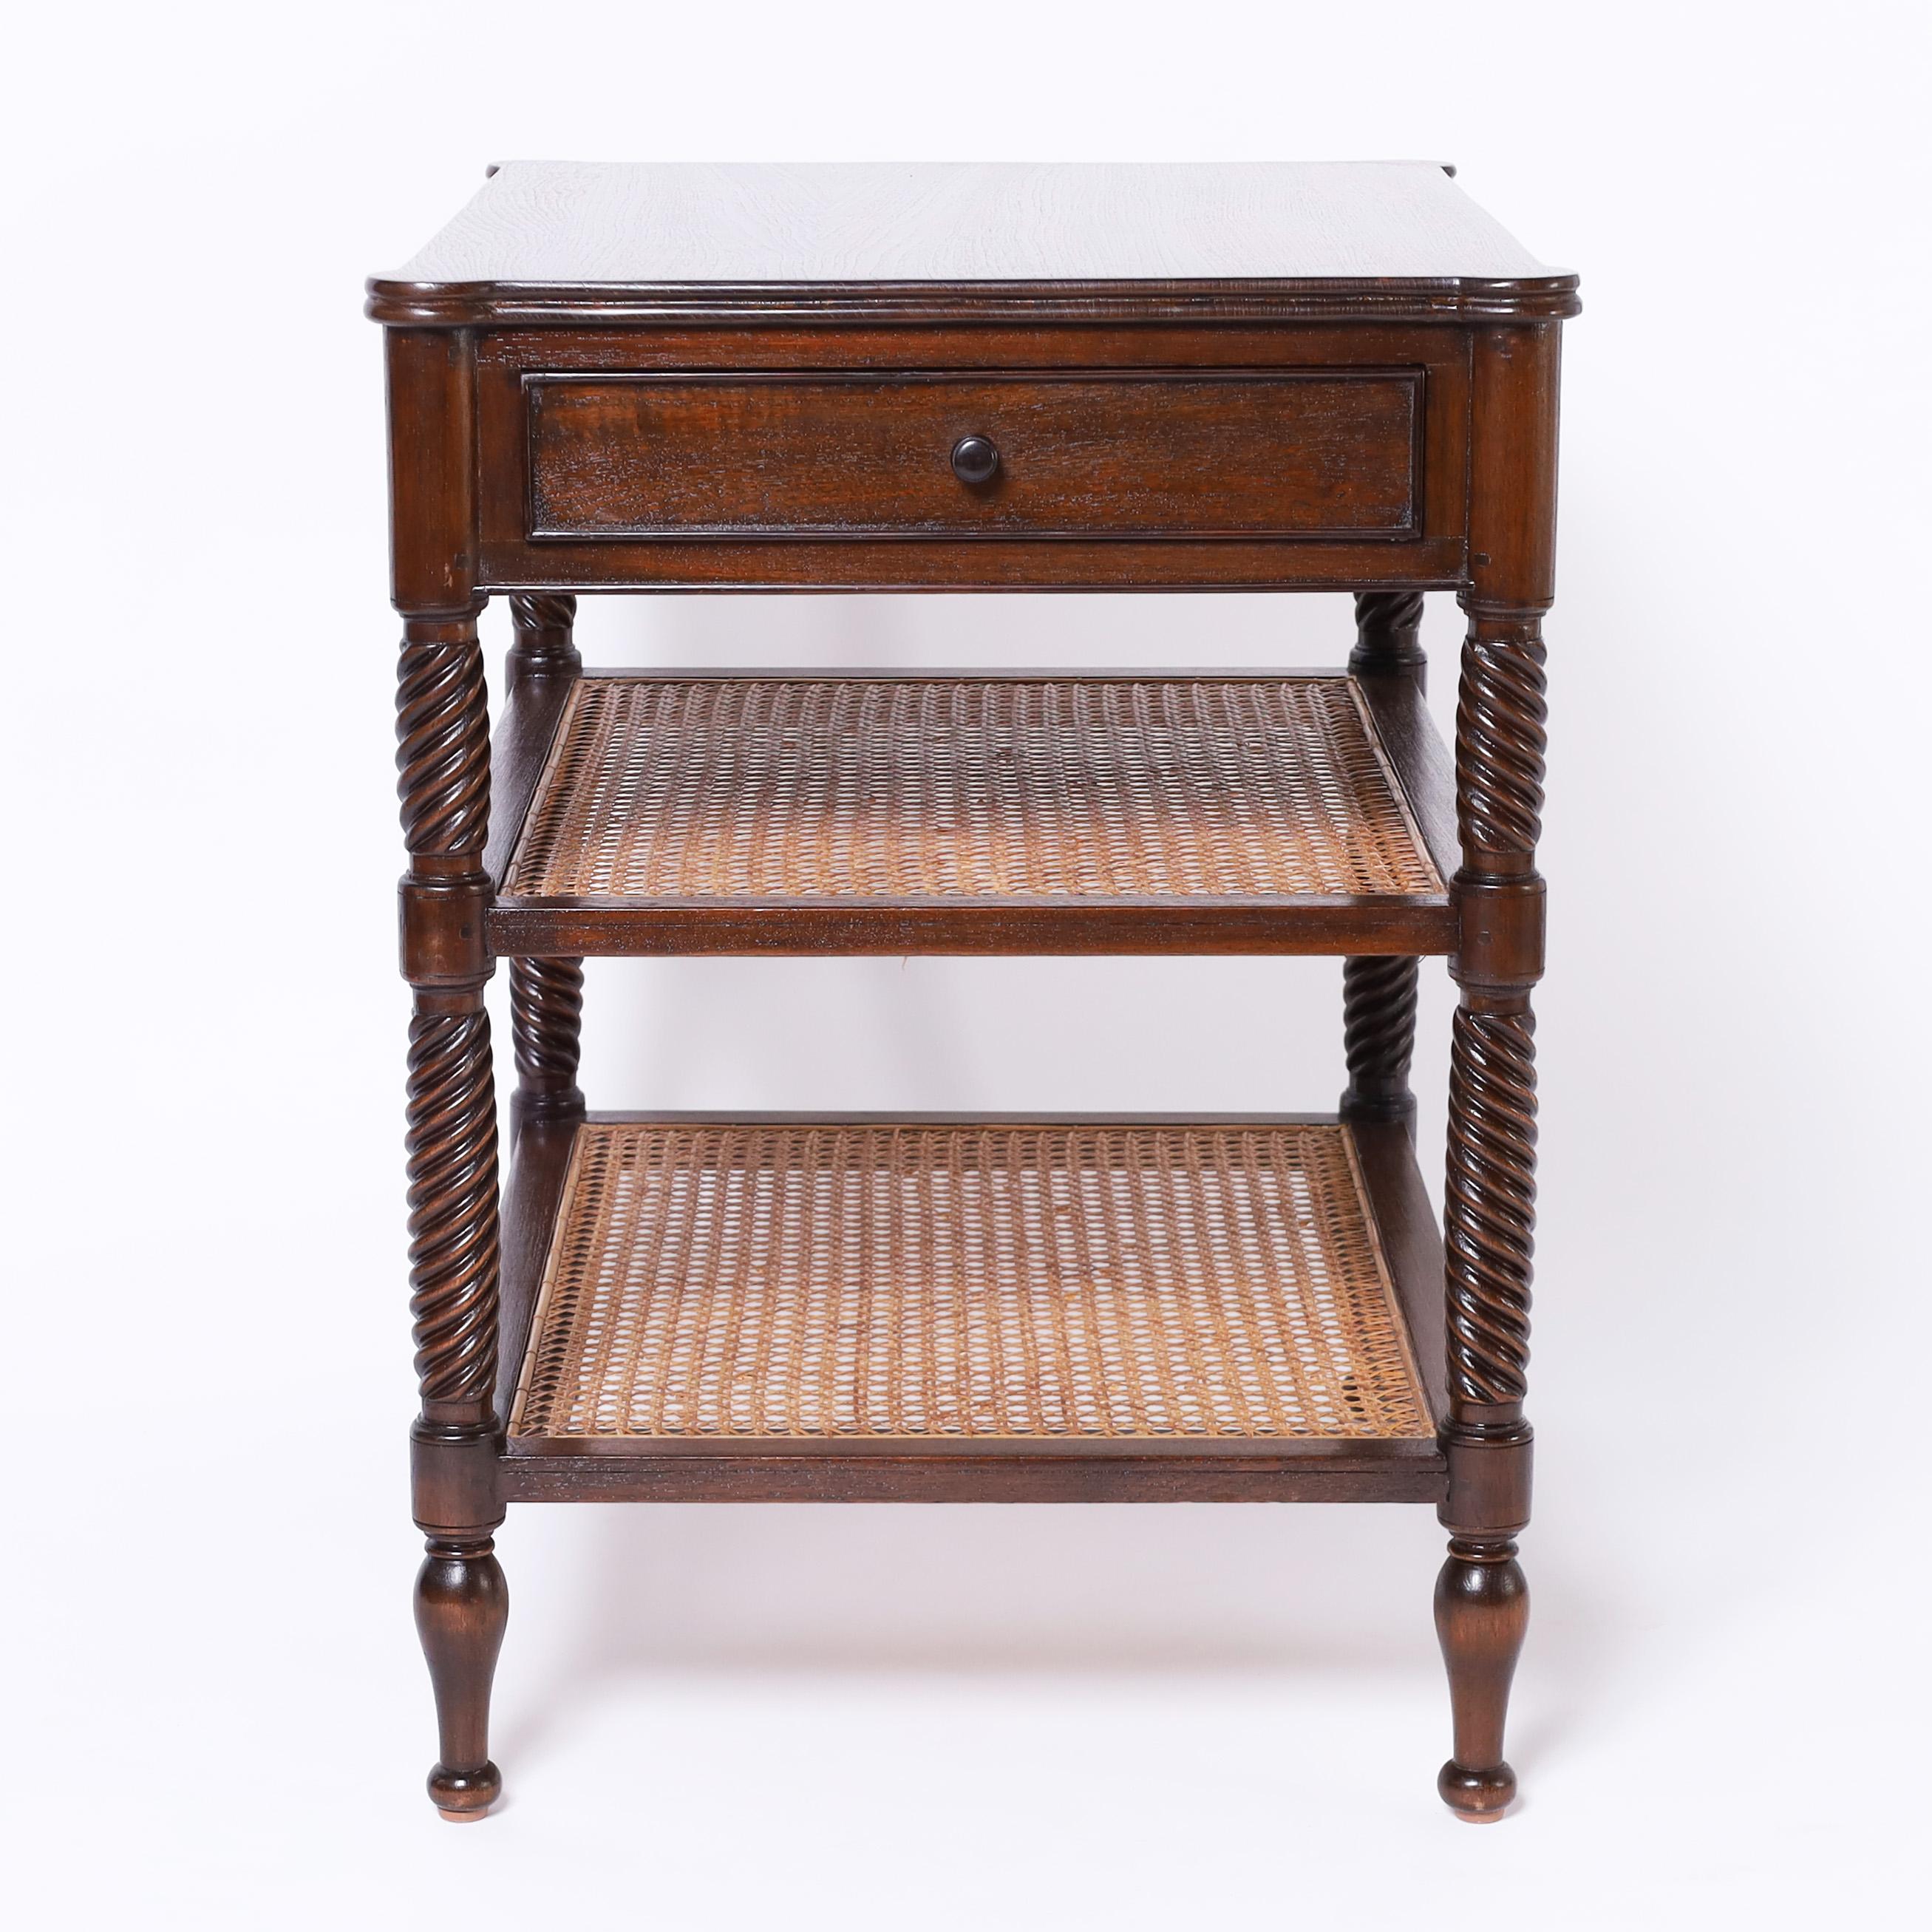 Cet élégant meuble anglais en acajou comporte un tiroir sur deux niveaux inférieurs cannelés, avec des supports tournés et torsadés sur des pieds tournés classiques. 